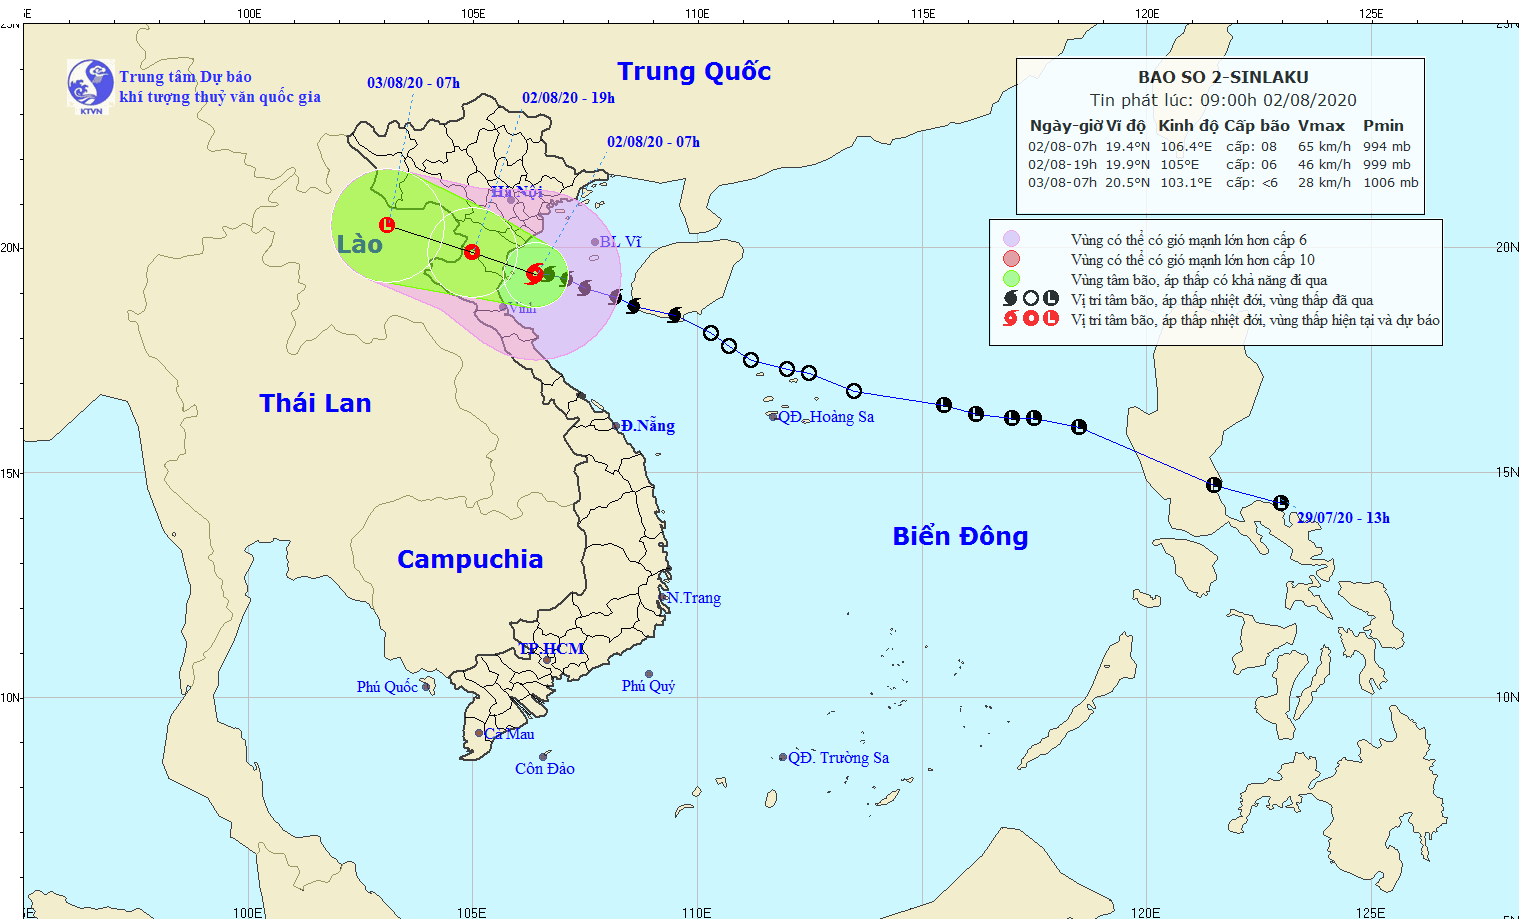 Bão số 2 tiến sát đất liền các tỉnh Ninh Bình - Nghệ An, Bắc Bộ và Bắc Trung bộ tiếp tục mưa to đến rất to - Ảnh 1.